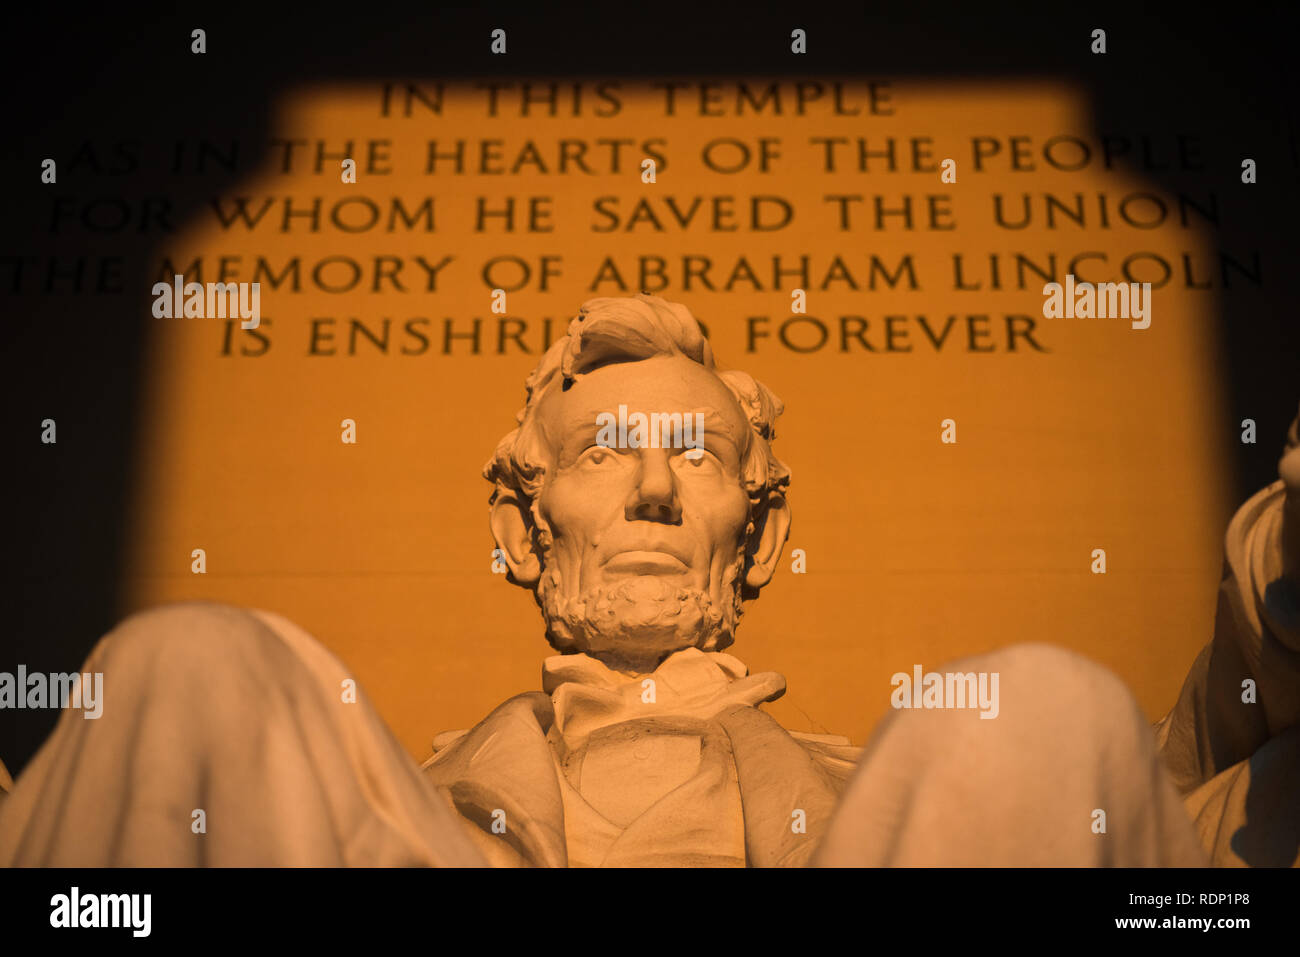 WASHINGTON DC, USA – die Lincoln Memorial Statue, die sich im Lincoln Memorial in Washington, DC, USA, befindet, ist ein bemerkenswertes Kunstwerk und ein wichtiges Symbol der amerikanischen Geschichte. Diese berühmte Marmorstatue wurde vom berühmten Bildhauer Daniel Chester French entworfen und repräsentiert Abraham Lincoln, den 16. Präsidenten der Vereinigten Staaten, der während der turbulenten Zeit des Bürgerkriegs eine entscheidende Rolle beim Erhalt der Nation spielte. Stockfoto